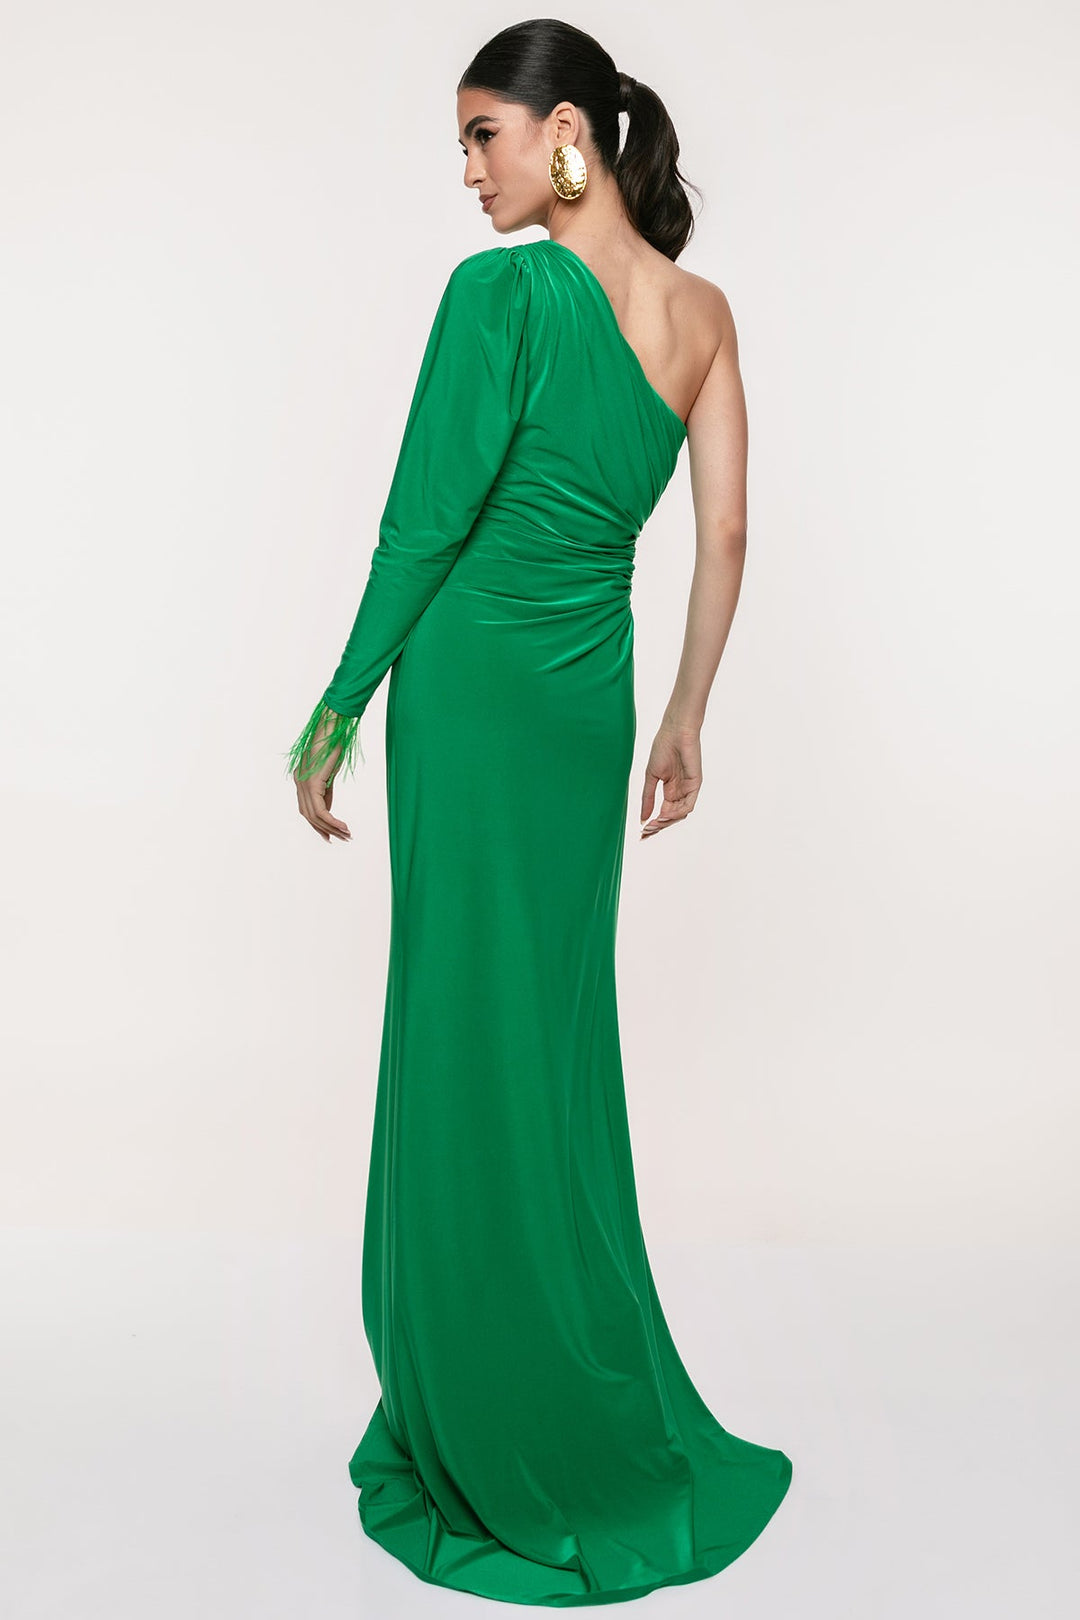 Φόρεμα μάξι με έναν ώμο και ανοίγματα A Collection Boutique - A Collection Boutique